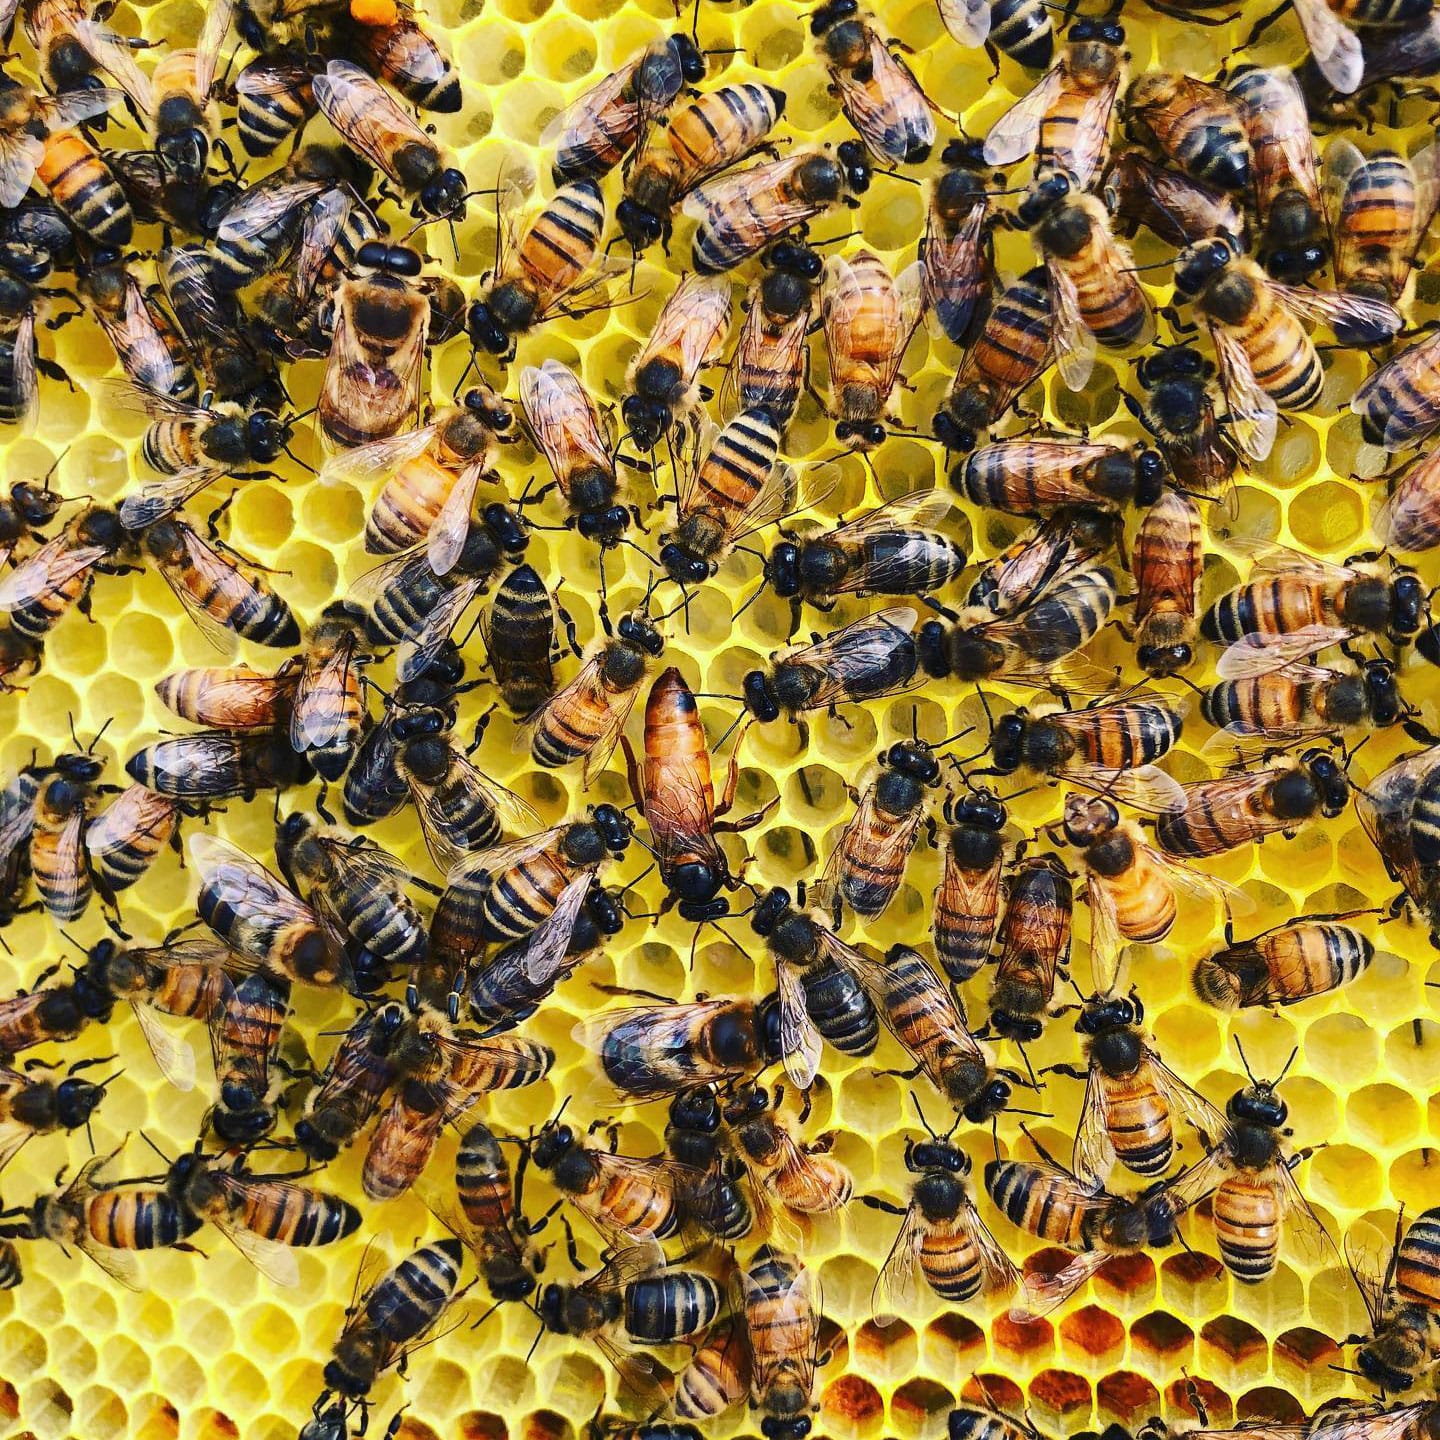 Hive and Honey in Scott County, VA